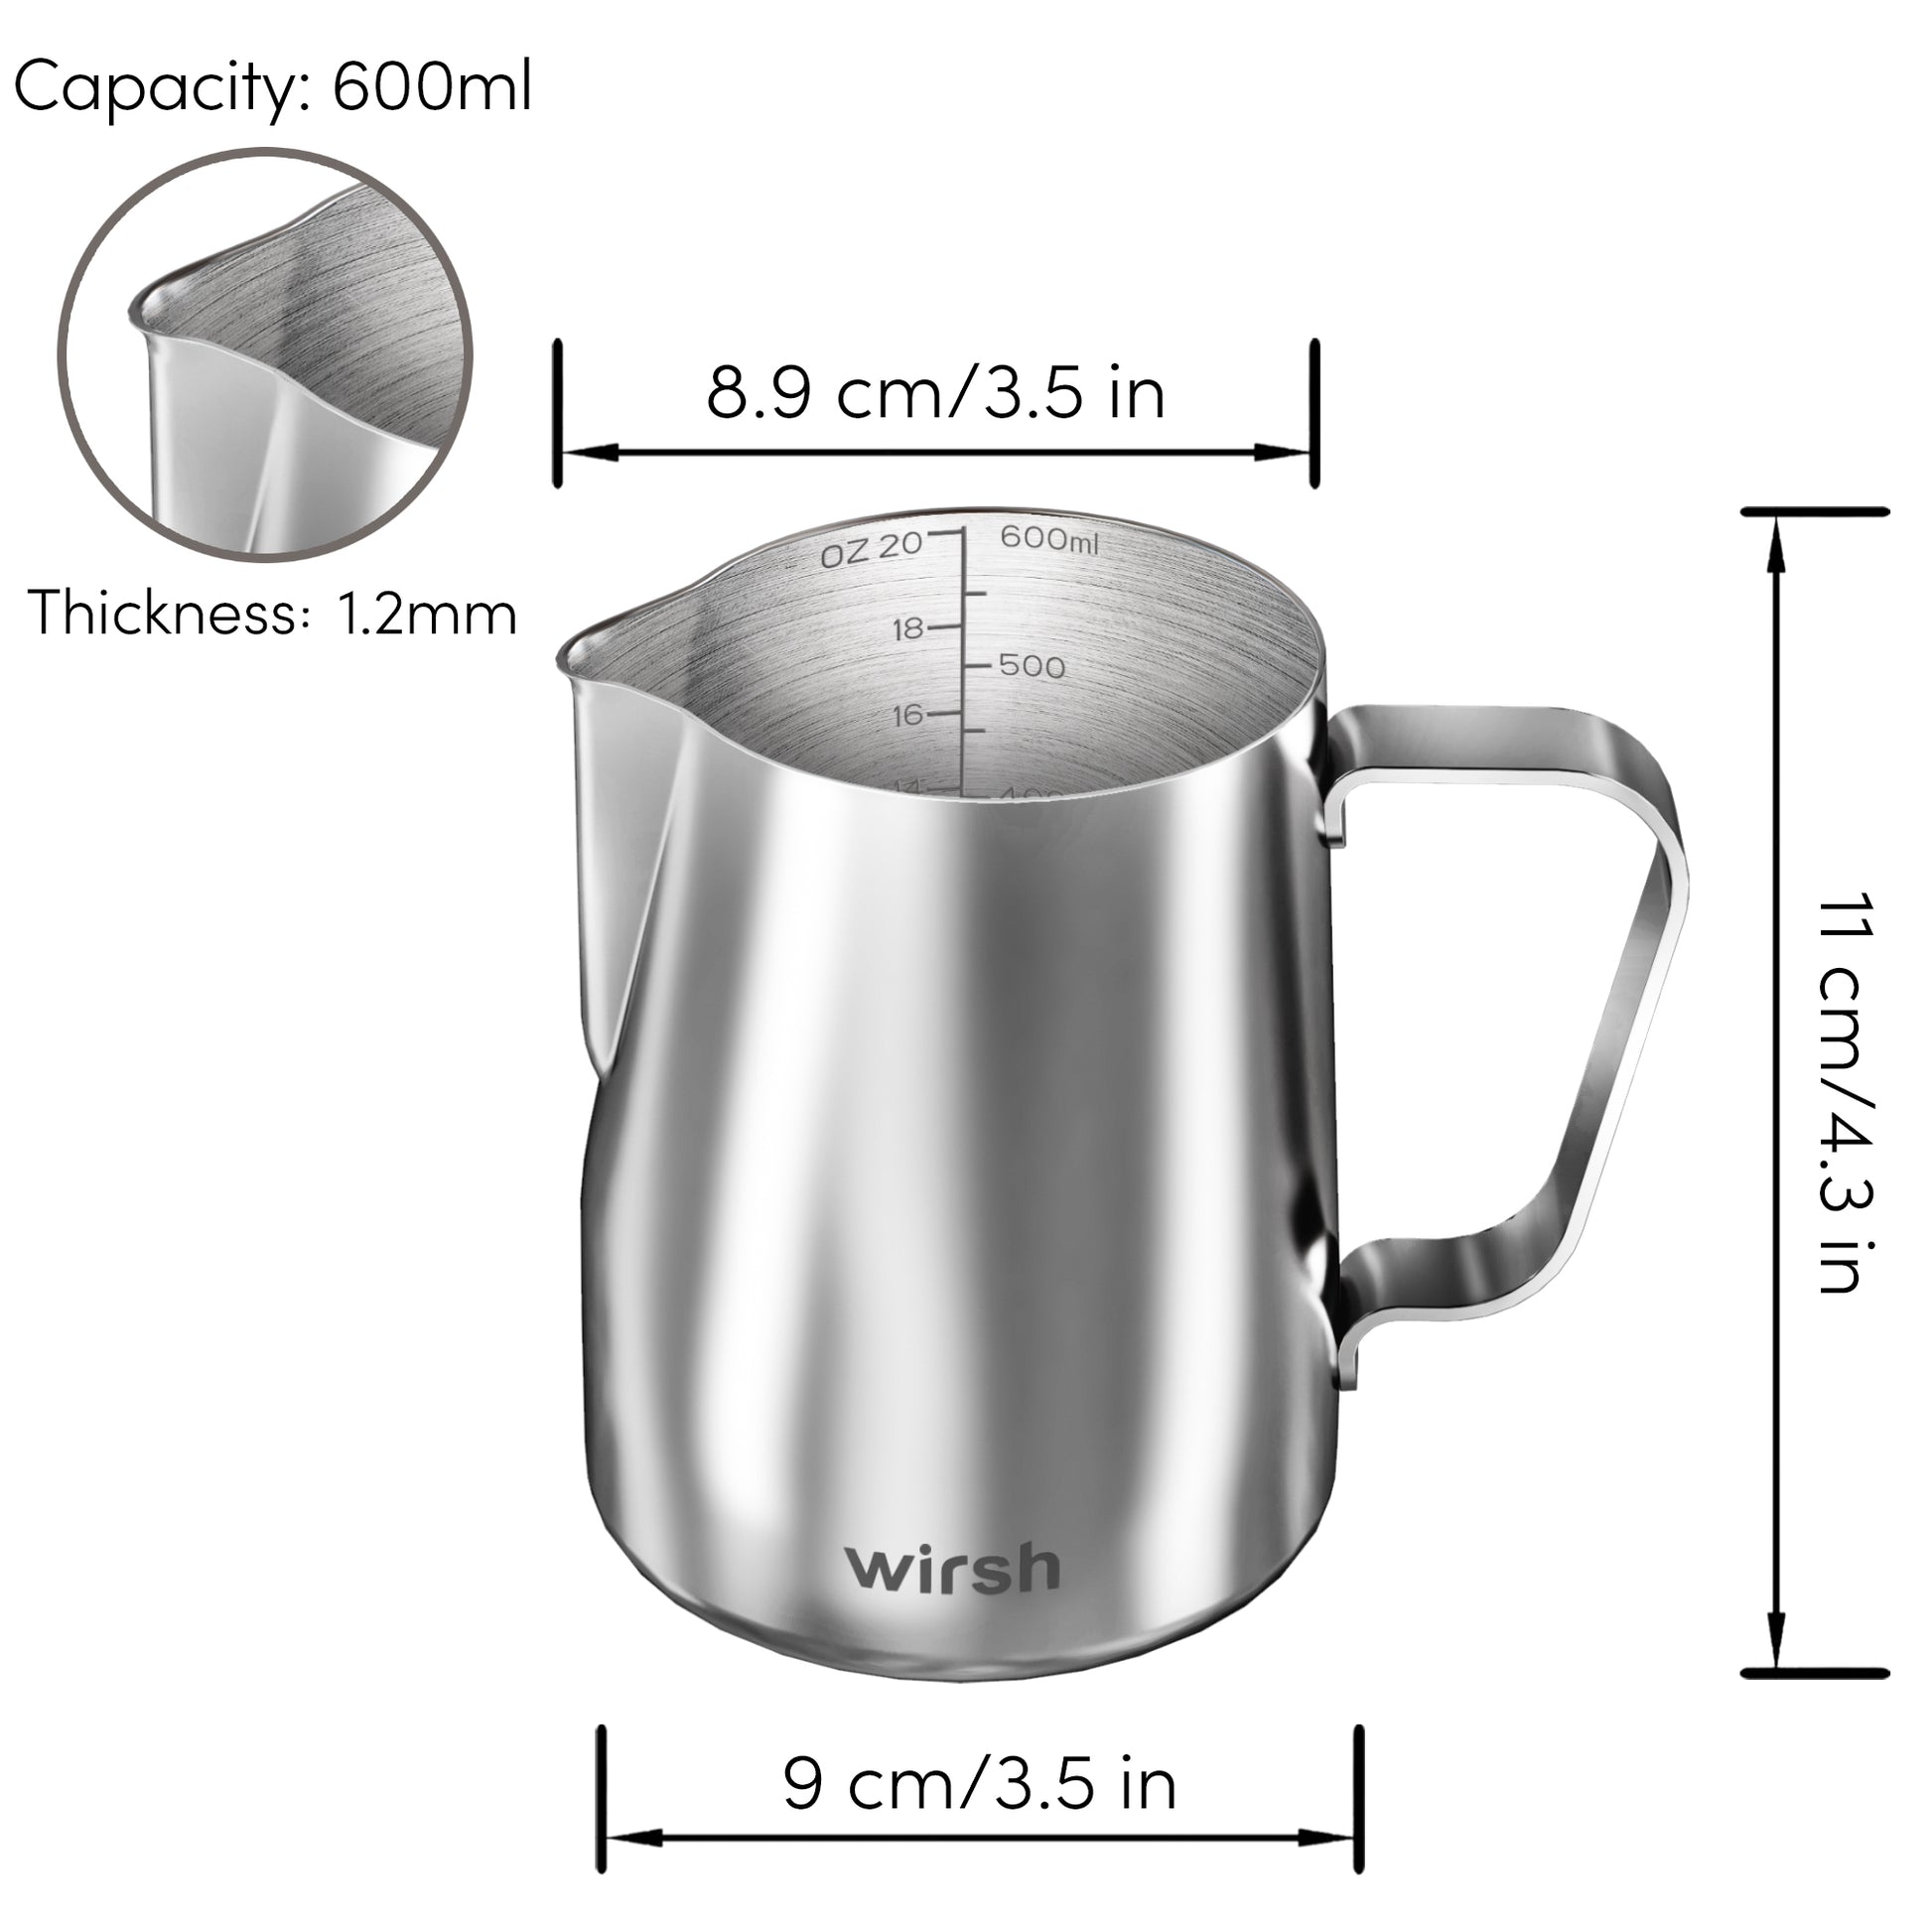 < img src="milk frothing pitcher.jpg" alt="wirsh milk frothing pitcher size"/>